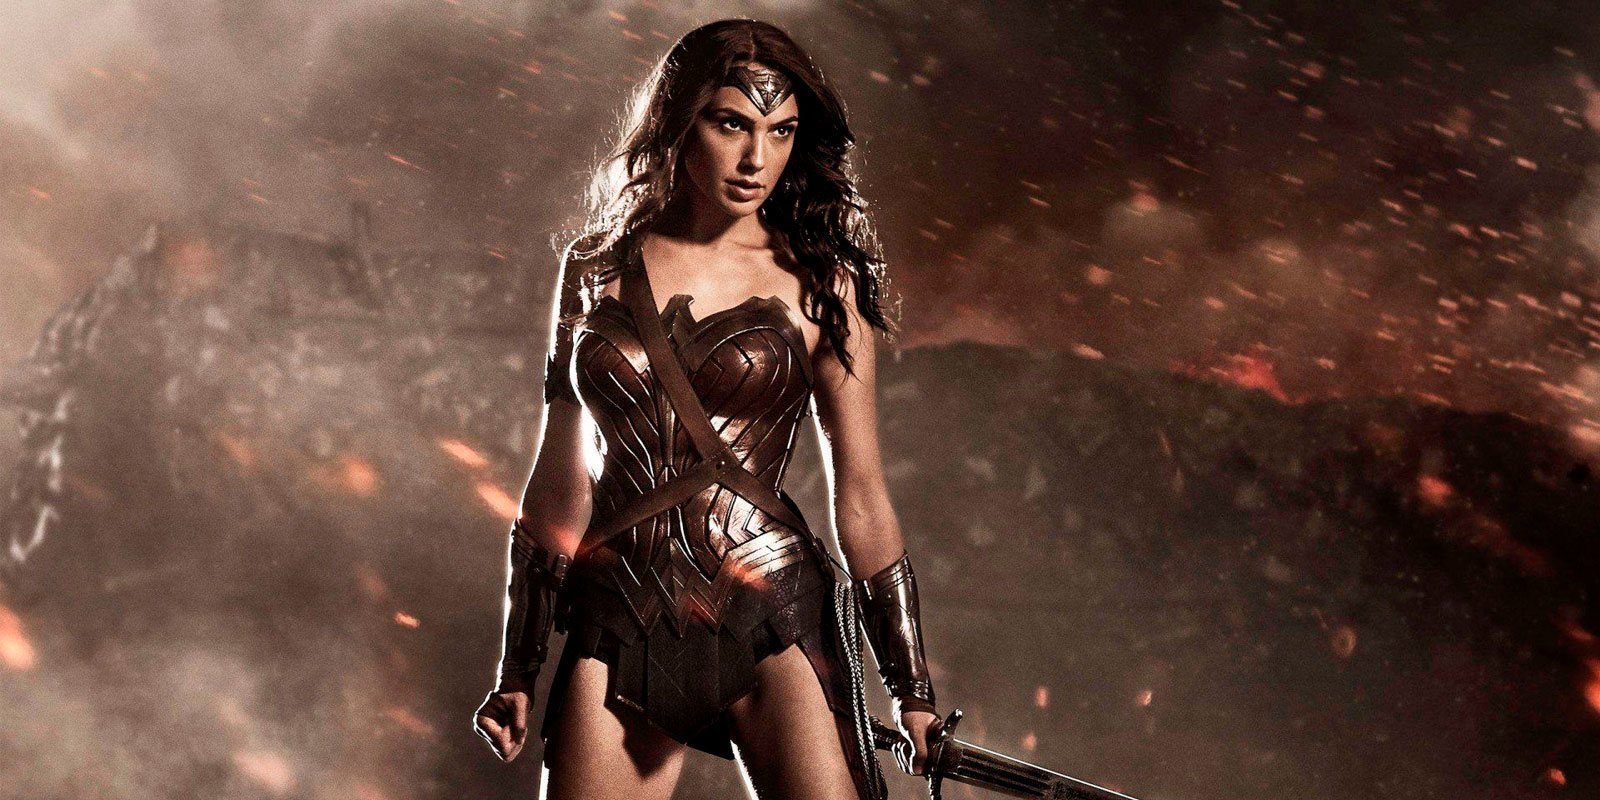 El rodaje de 'Wonder Woman 2' arrancaría este mismo verano y llegaría en 2019